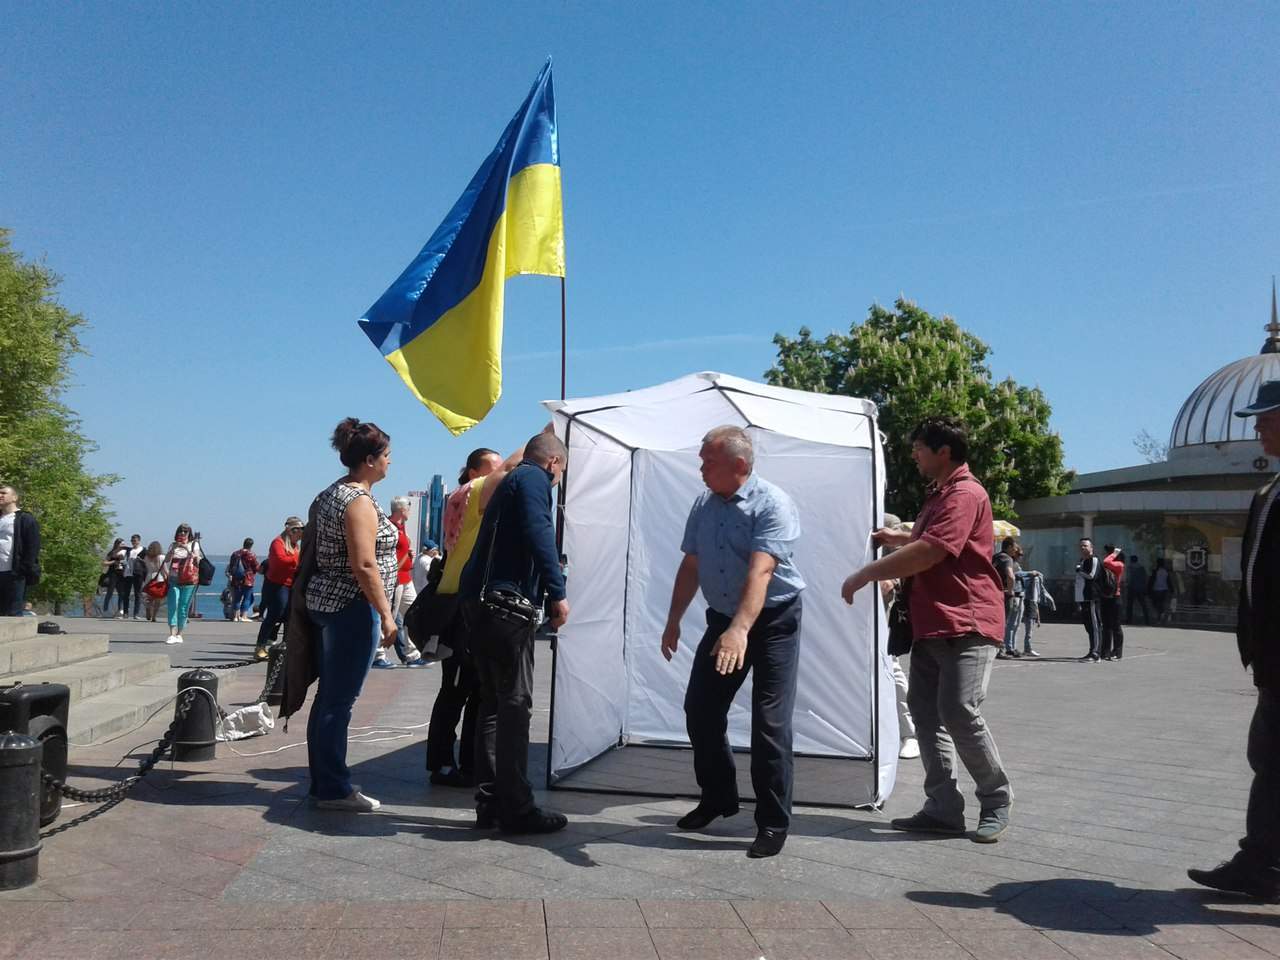 В центре Одессы проходит митинг за импичмент Порошенко (фото)